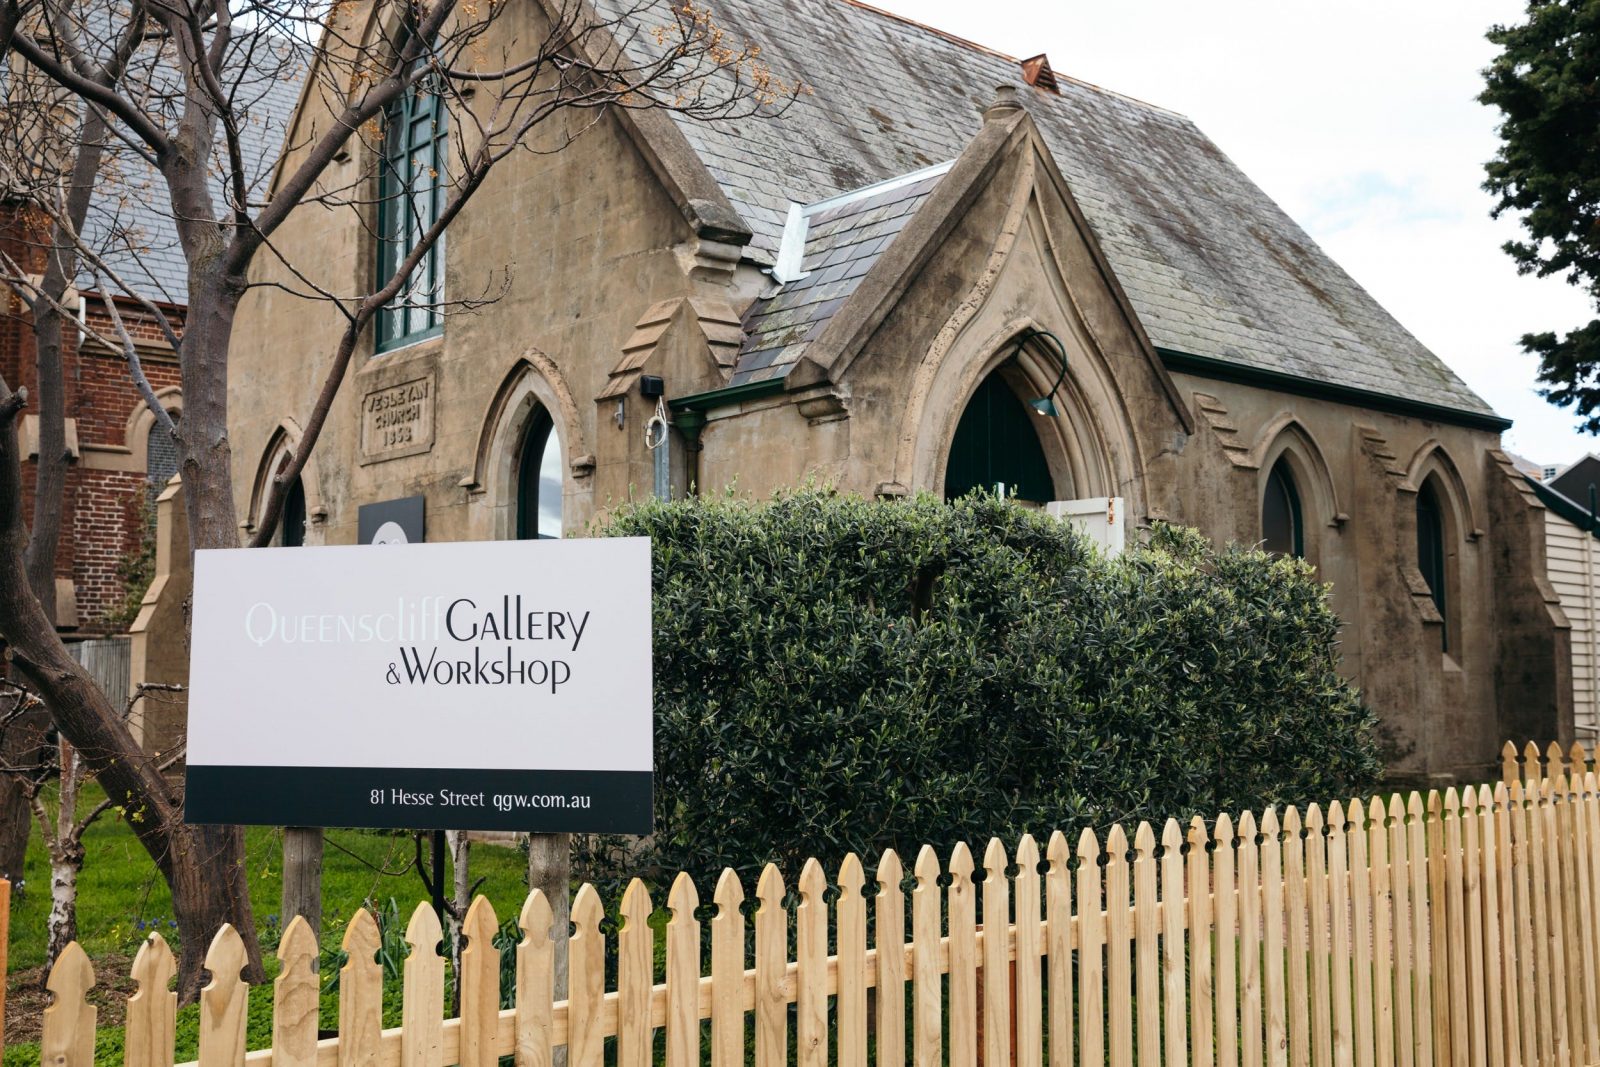 Queenscliff Gallery and Workshop, Attraction, Geelong 